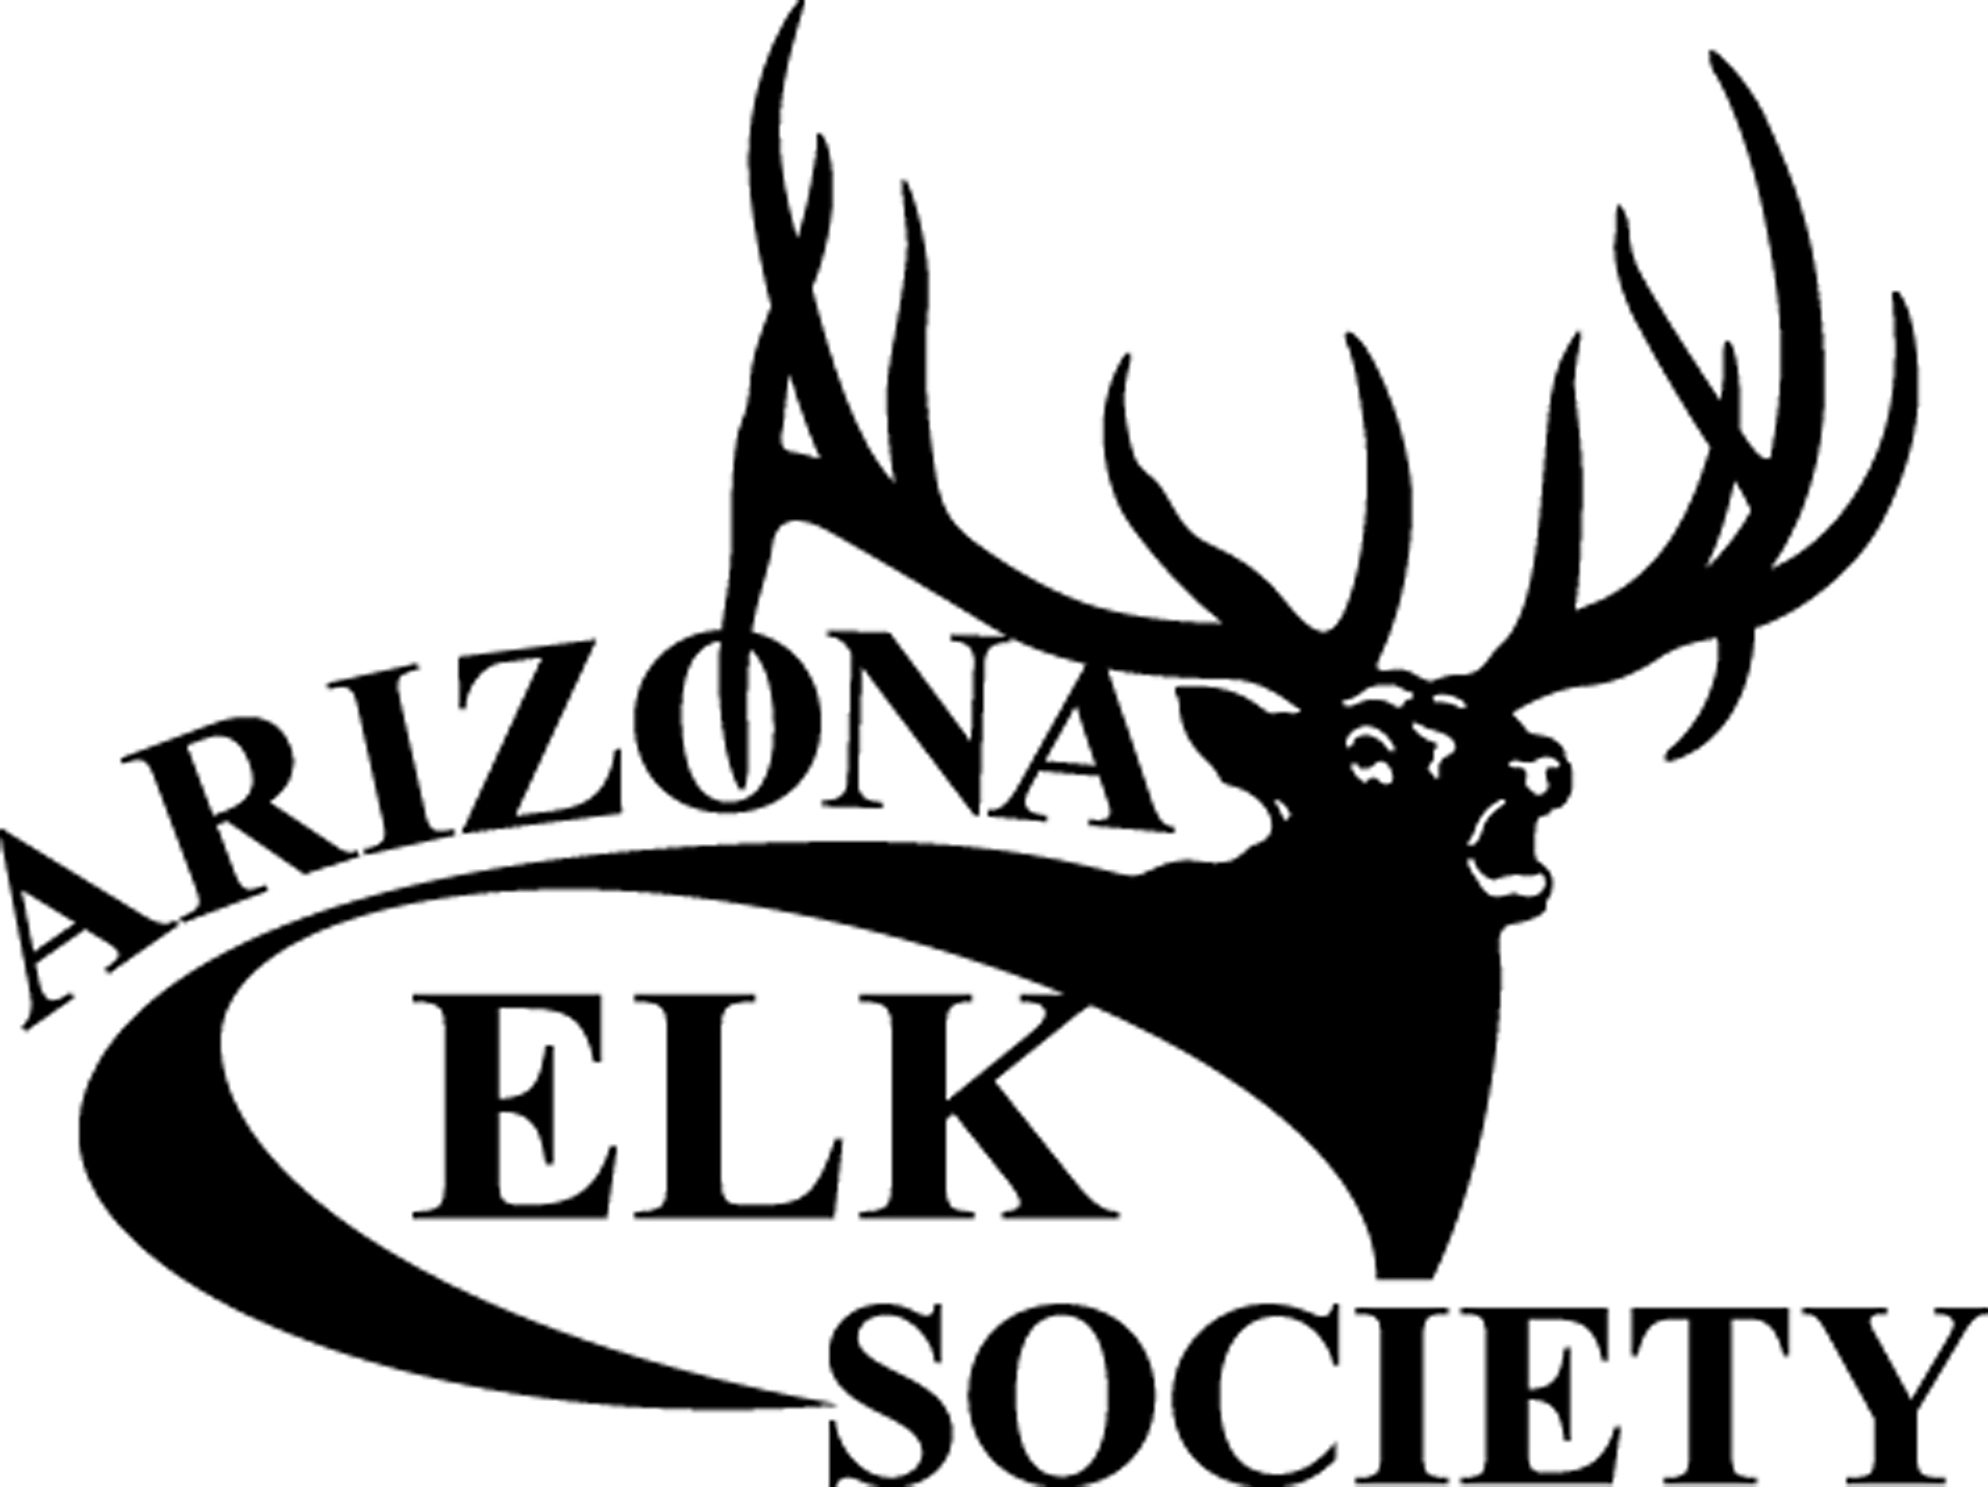 Arizona Elk Society